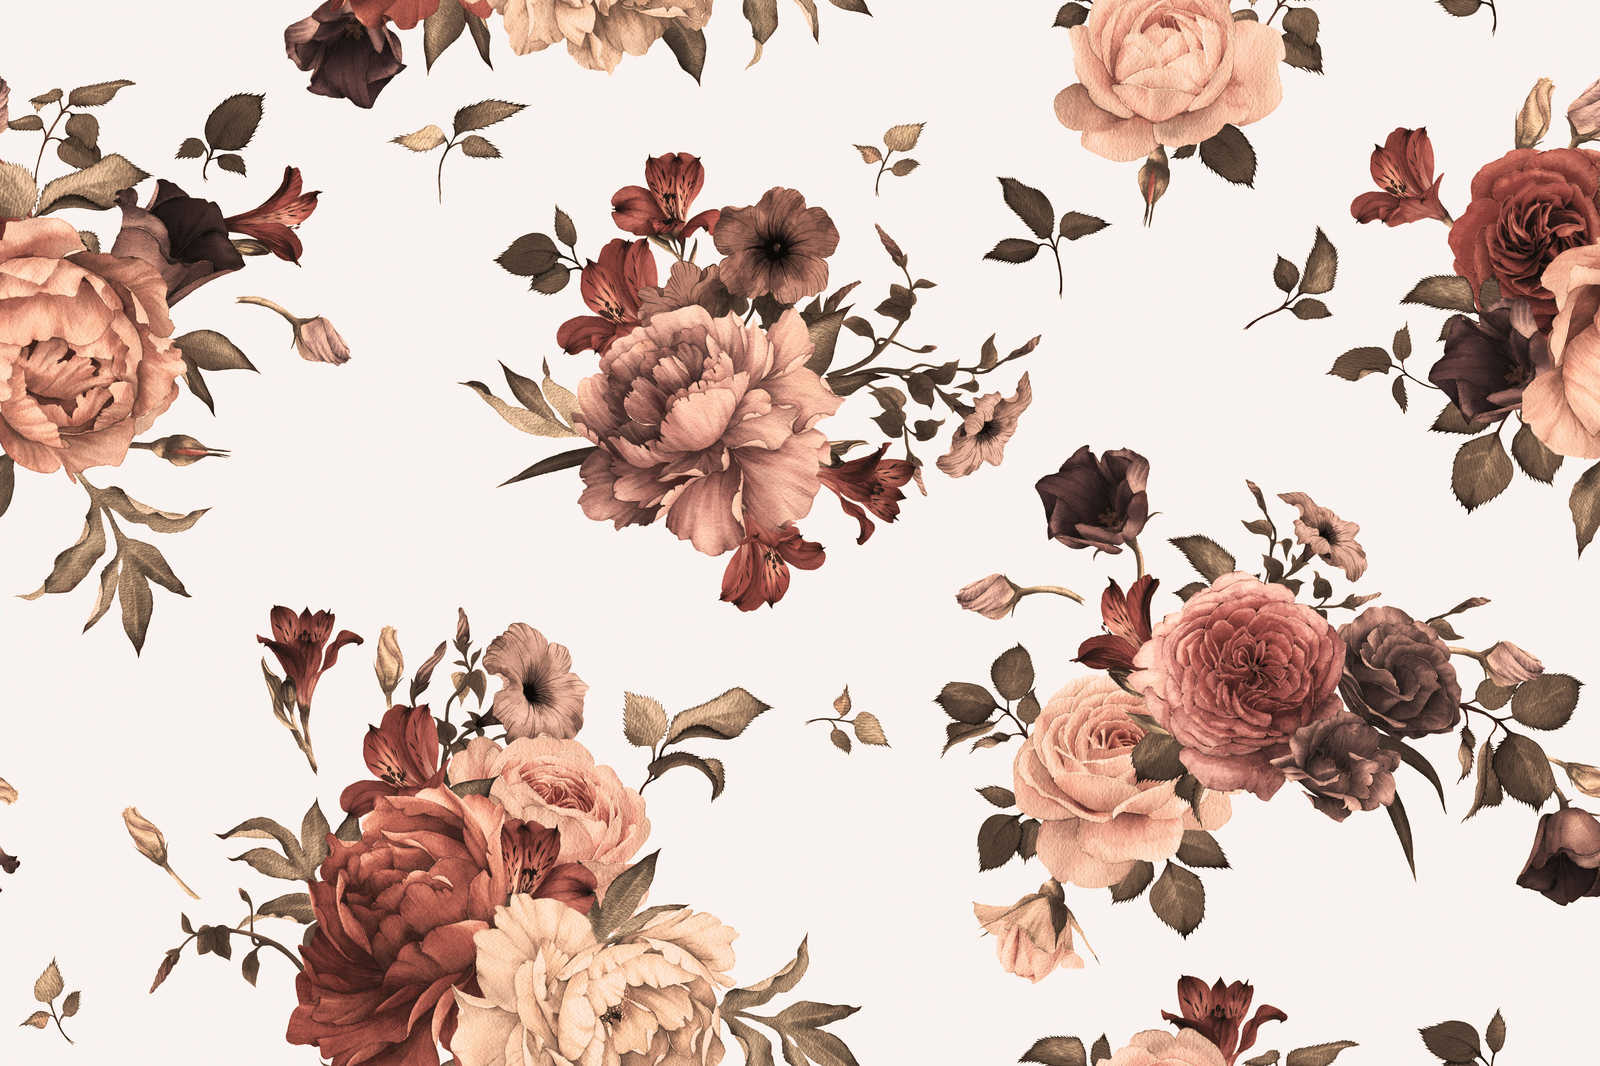             Blumen Leinwand romantisches Design – 0,90 m x 0,60 m
        